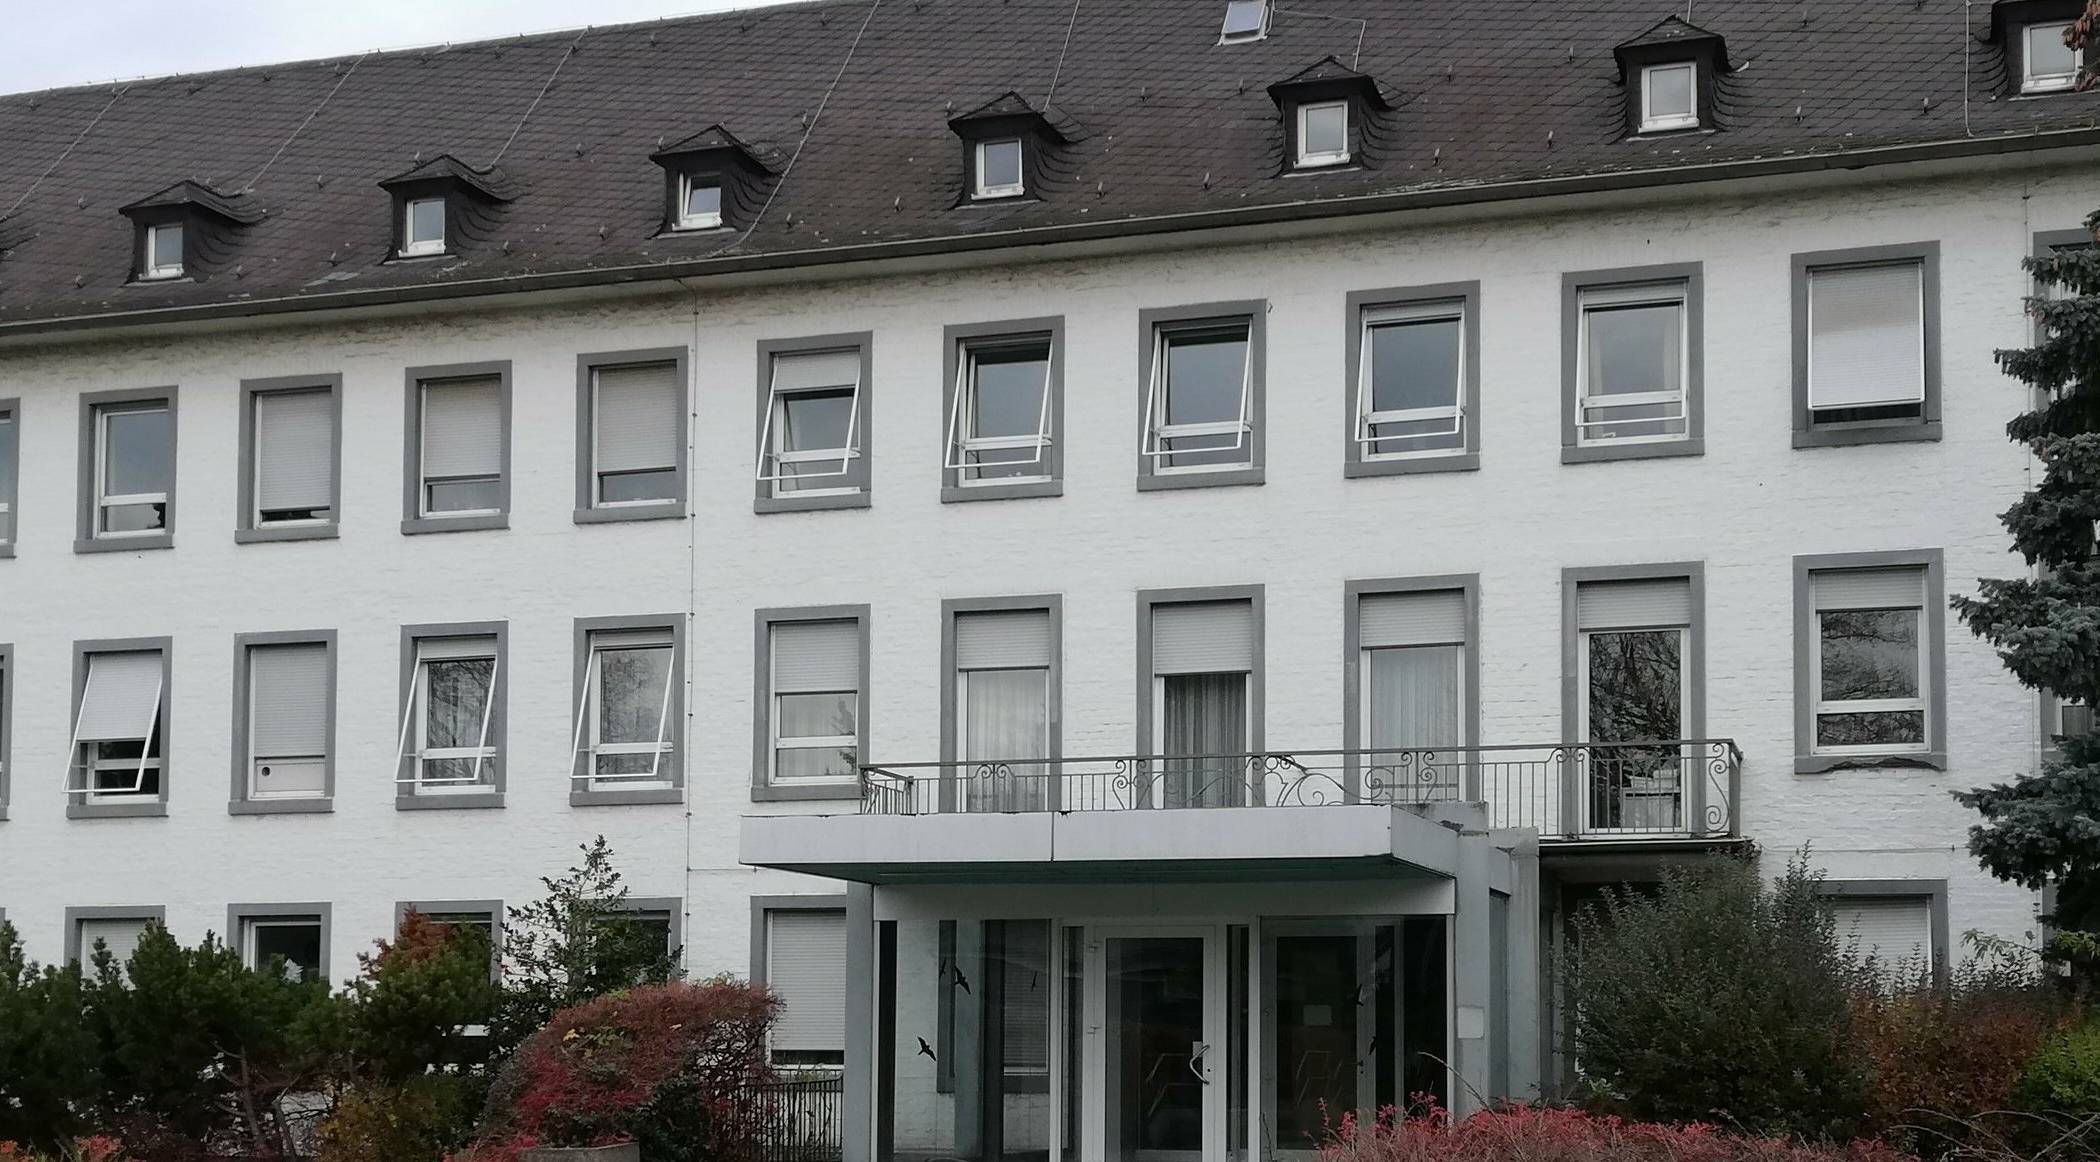  Bald stehen wieder Sitzungen und Beratungen rund um das Grevenbroicher Krankenhaus an. CDU-Fraktions-Chef Wolfgang Kaiser macht Druck mit einem offenen Brief.  